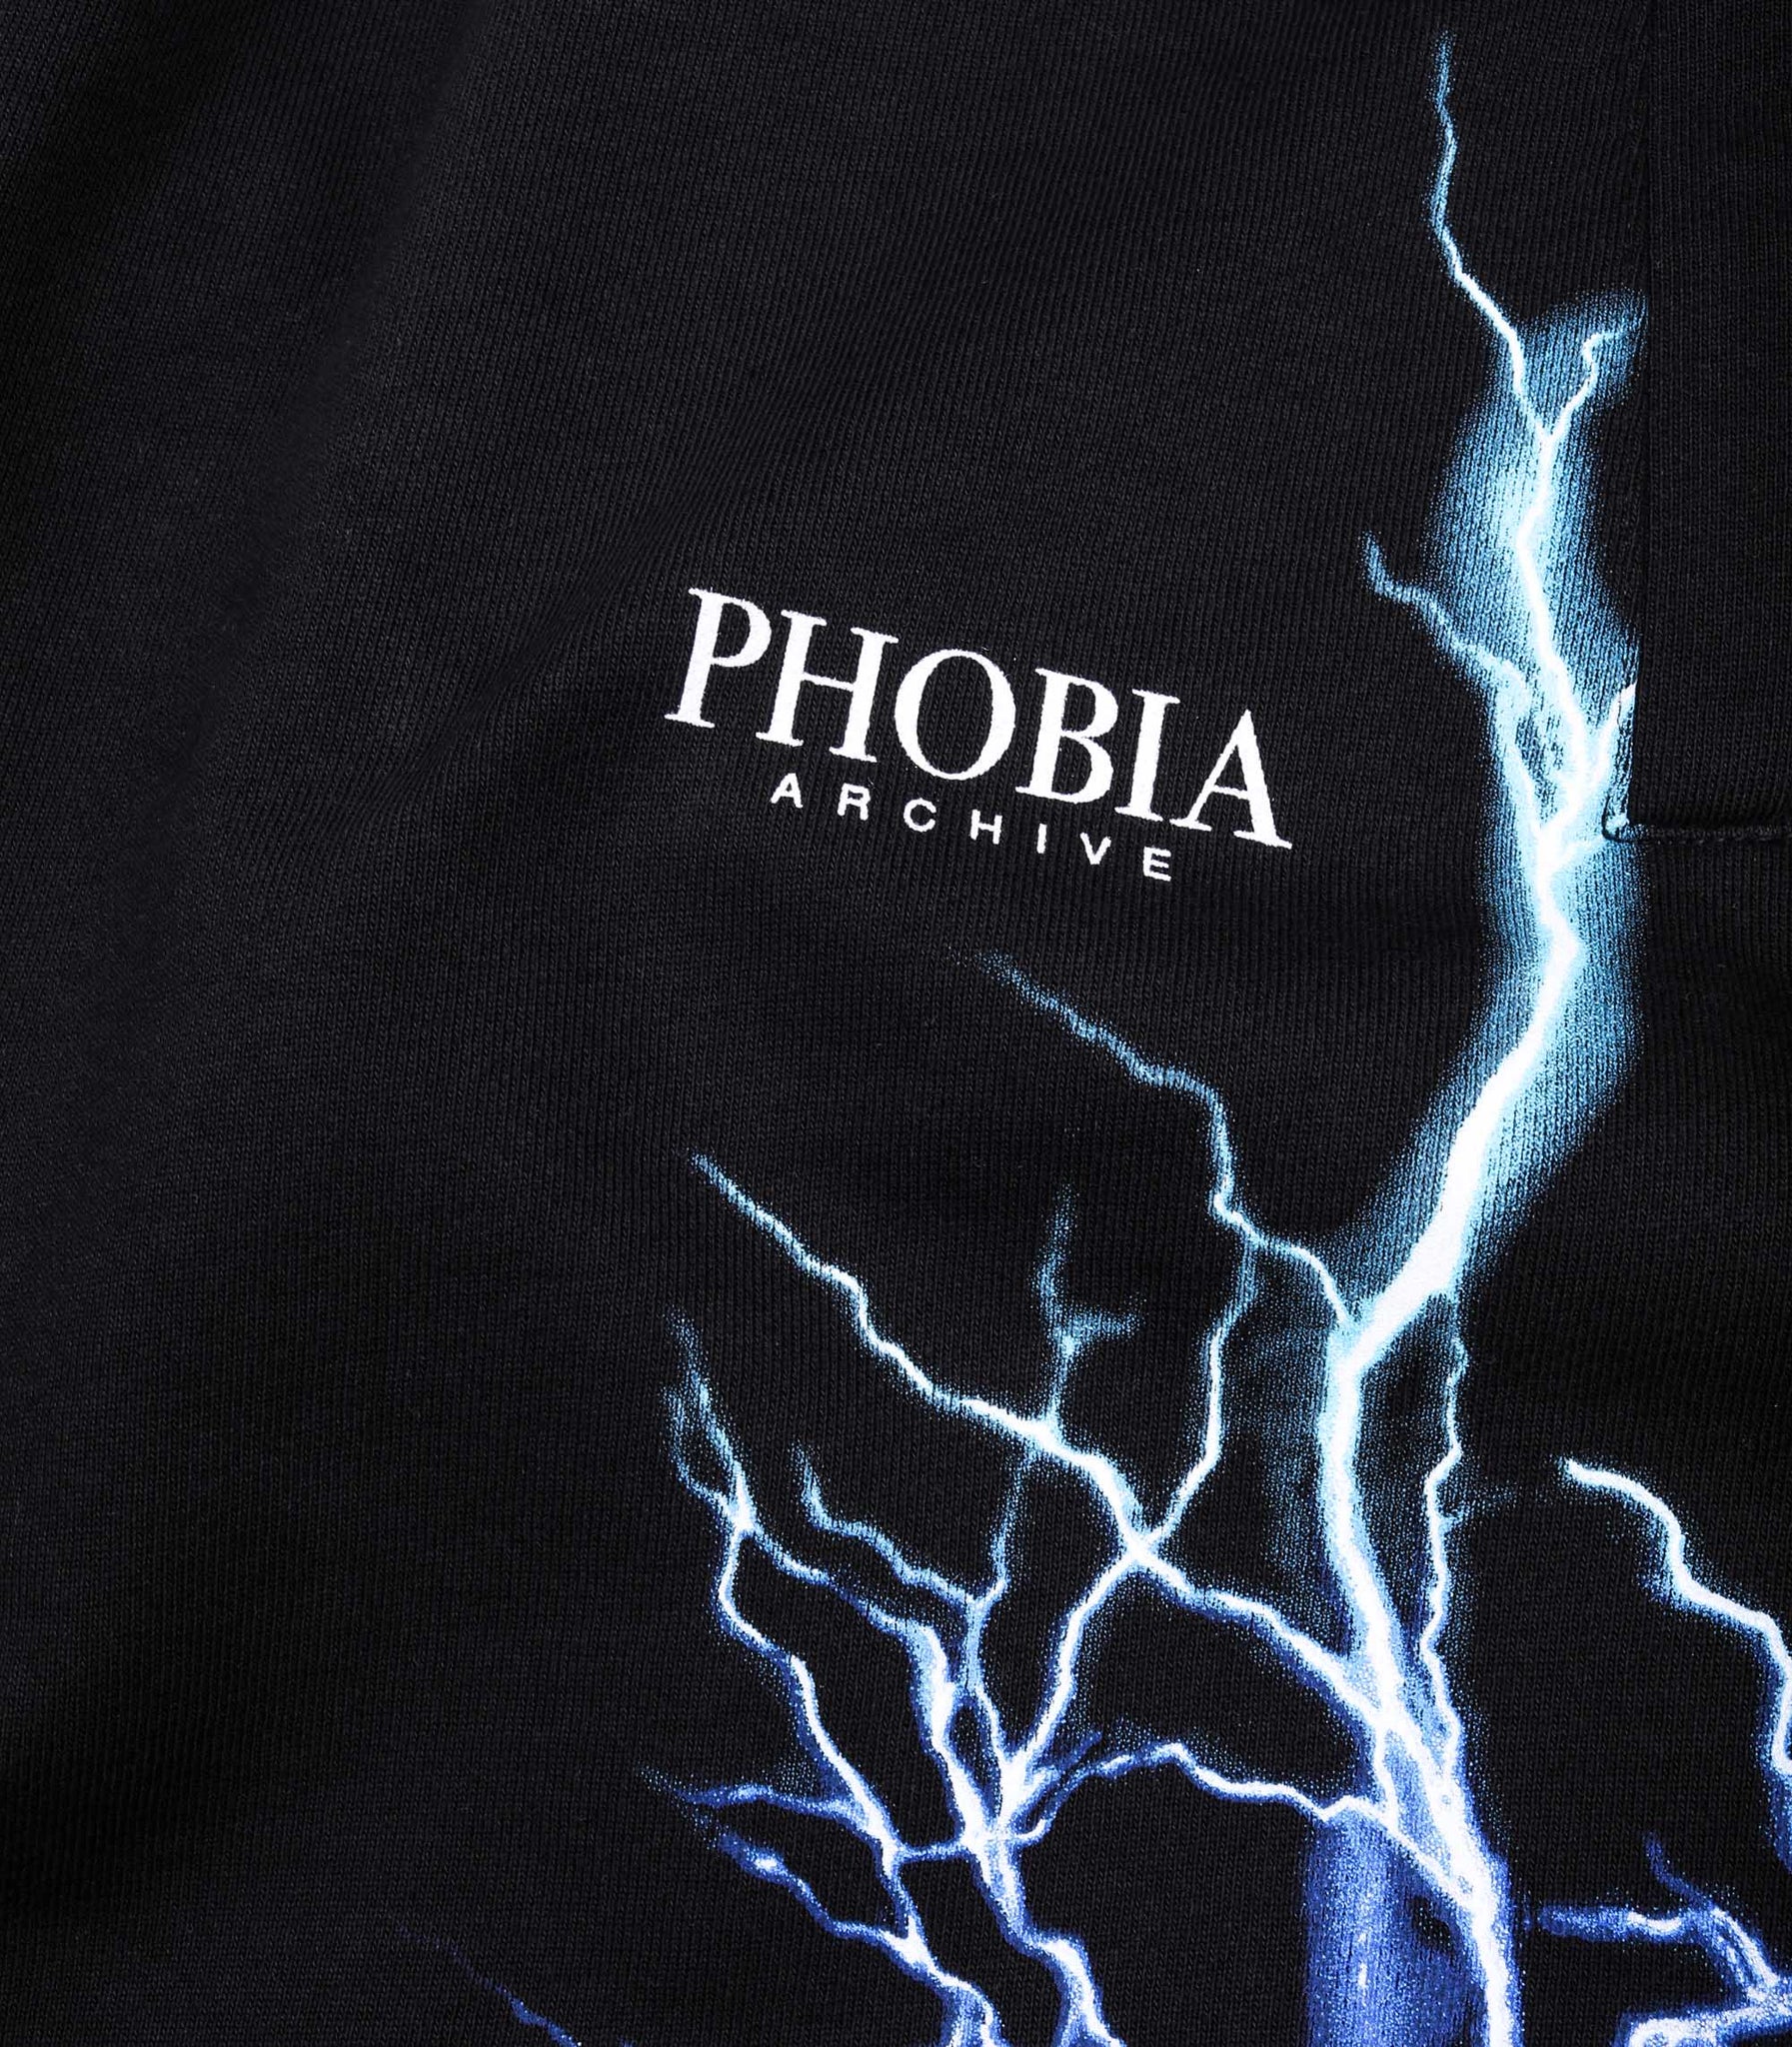 Phobia Black Shorts With Blue And Lightblue Lightning